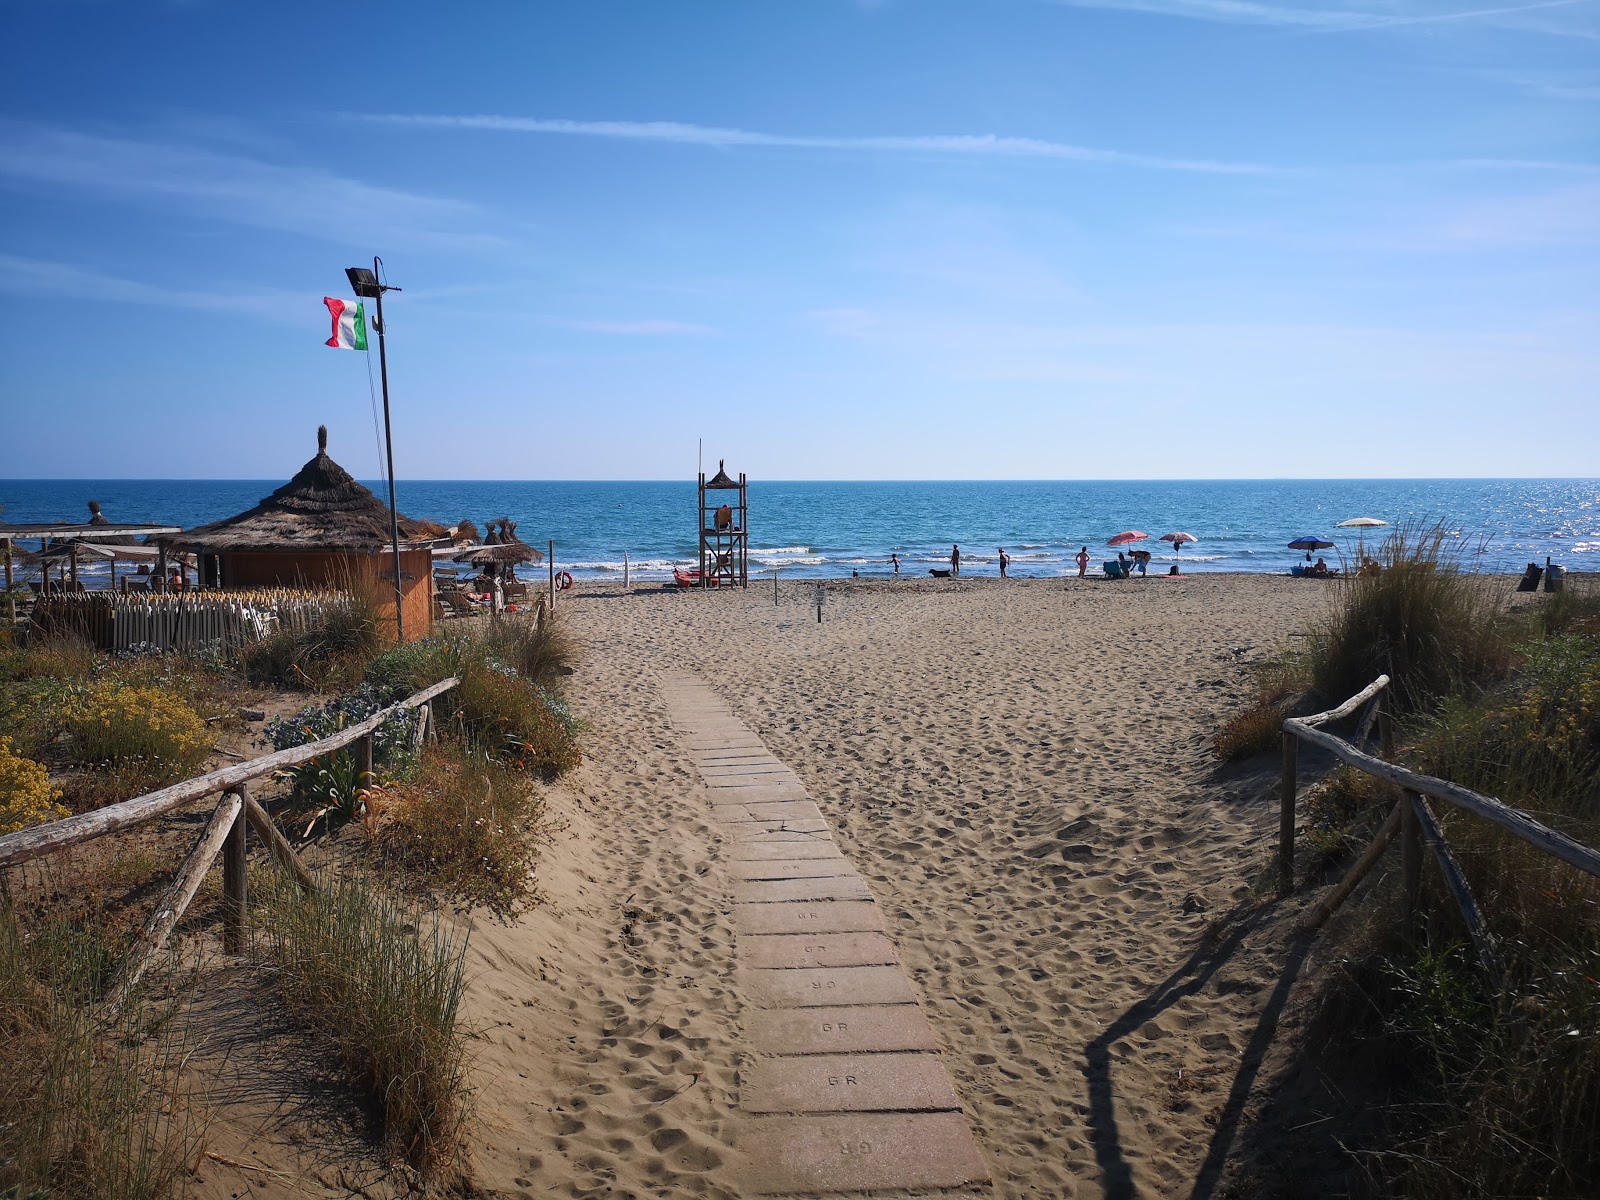 Fotografie cu Sunset Beach - recomandat pentru călătorii în familie cu copii